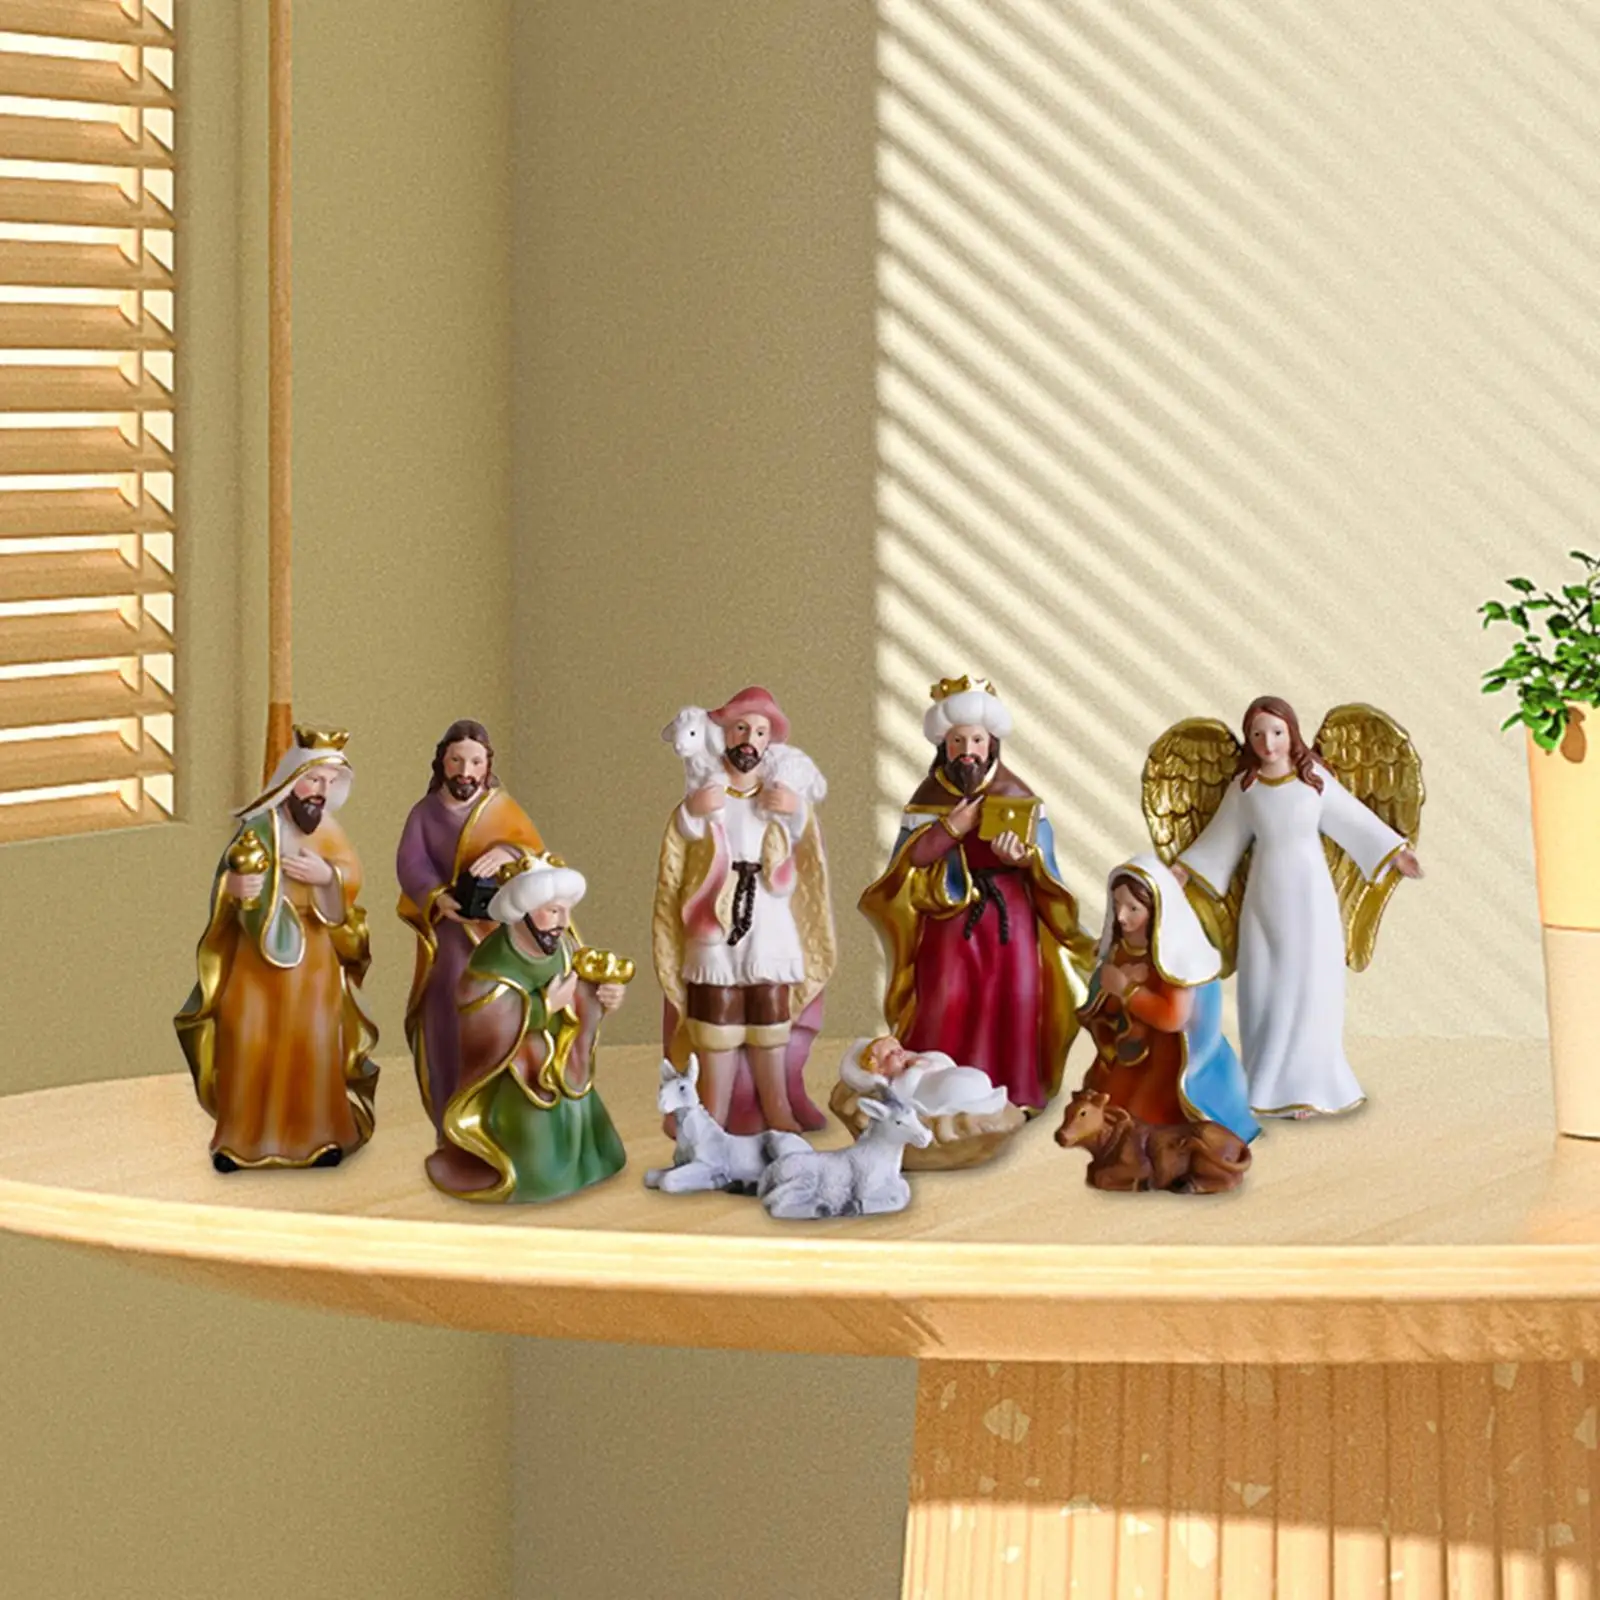 11x Nativity Figurine Set Colorful Manger Set Ornaments for Desk Home